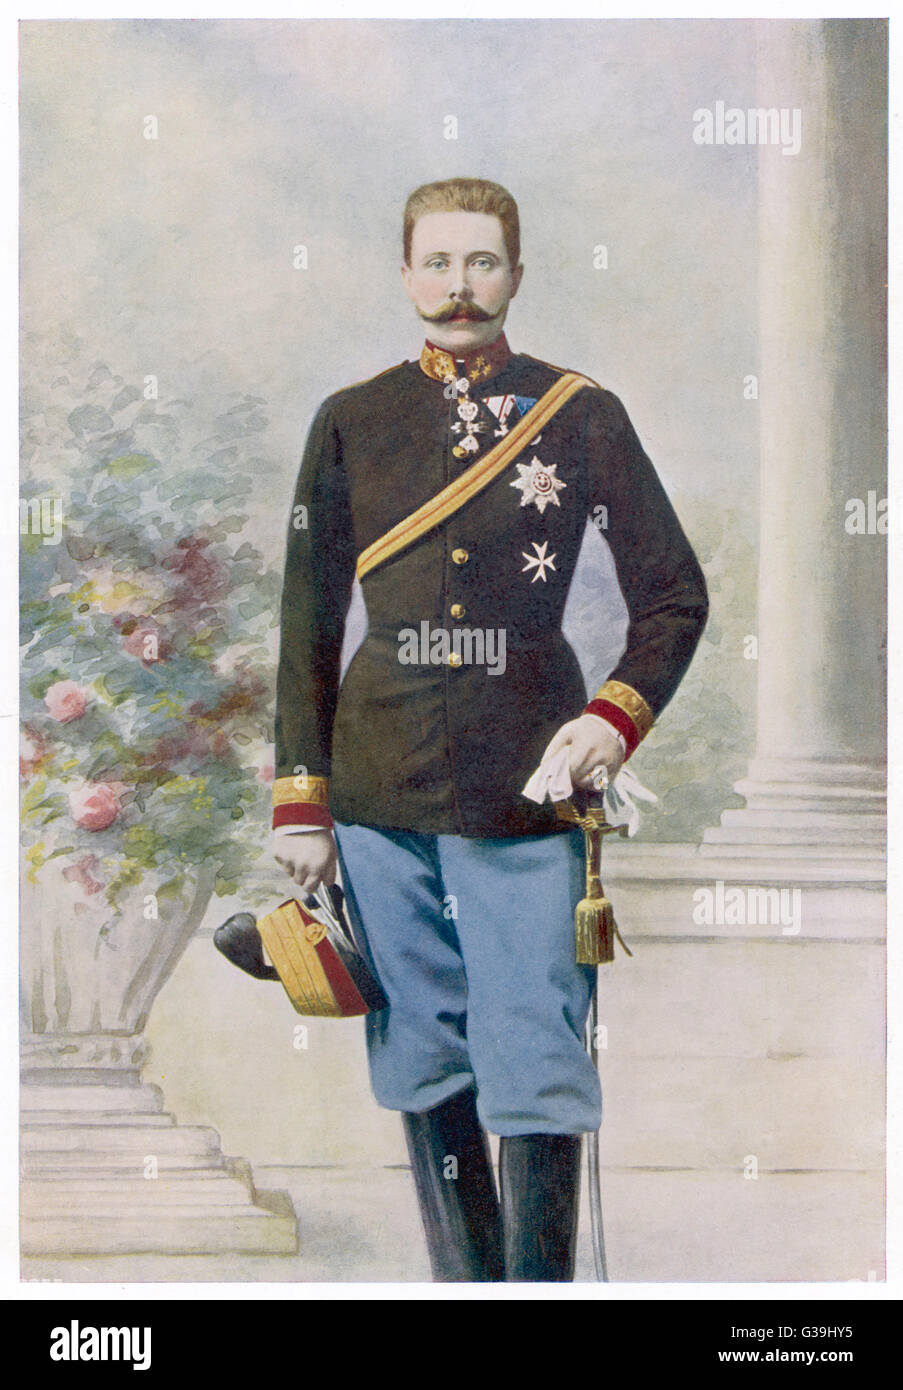 Arciduca Francesco Ferdinando erede dell'impero austriaco, nipote di Franz Joseph, assassinato nel 1914 Data: 1863 - 1914 Foto Stock